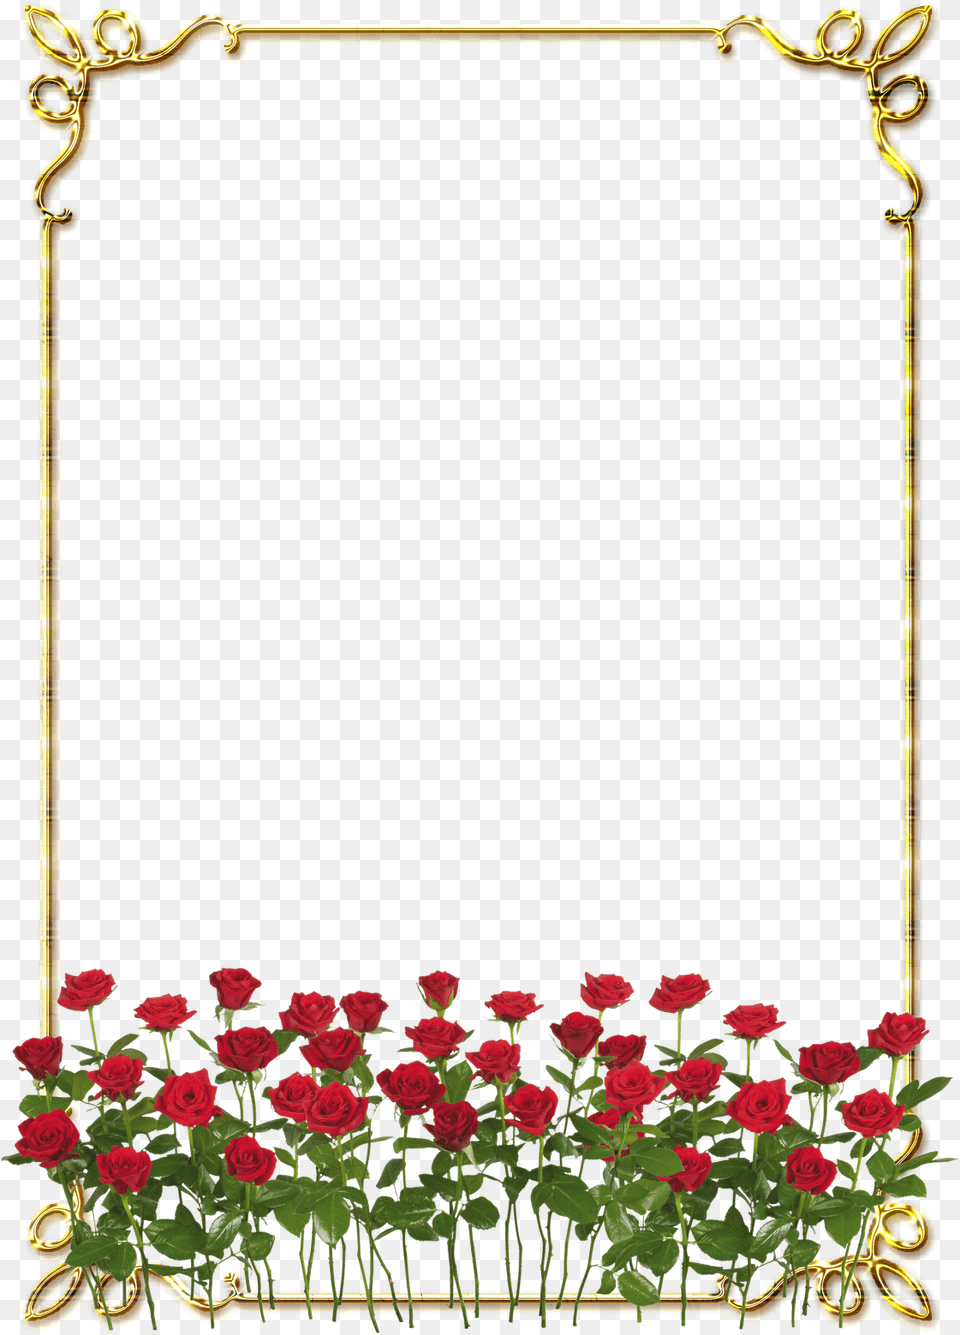 Download Hd Frames Douradas Com Rosa Vermelhas Rose Flowers, Flower, Plant, Art, Floral Design Free Transparent Png